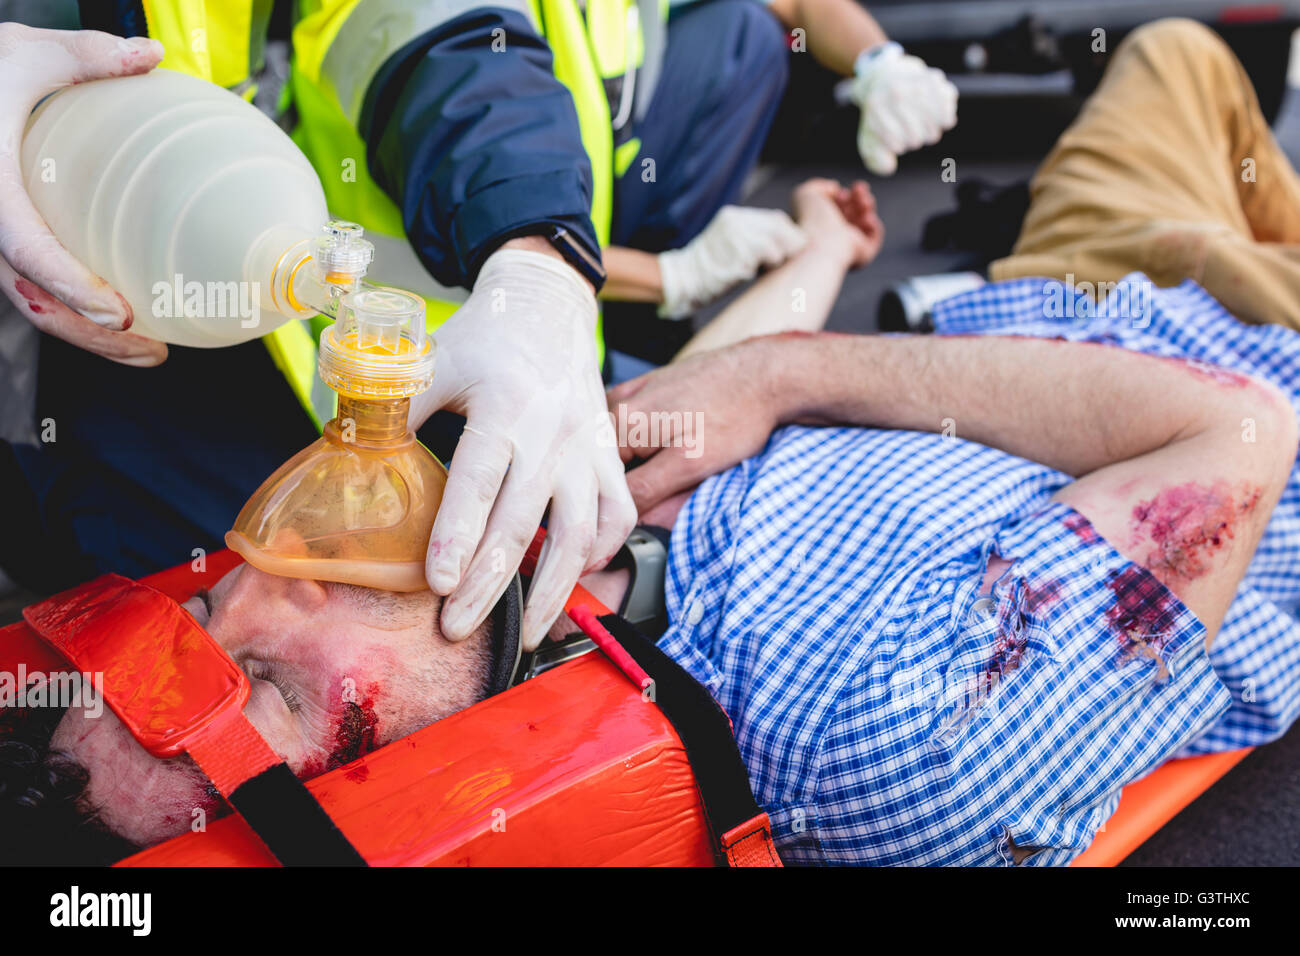 Ambulancemen healing injured man Stock Photo